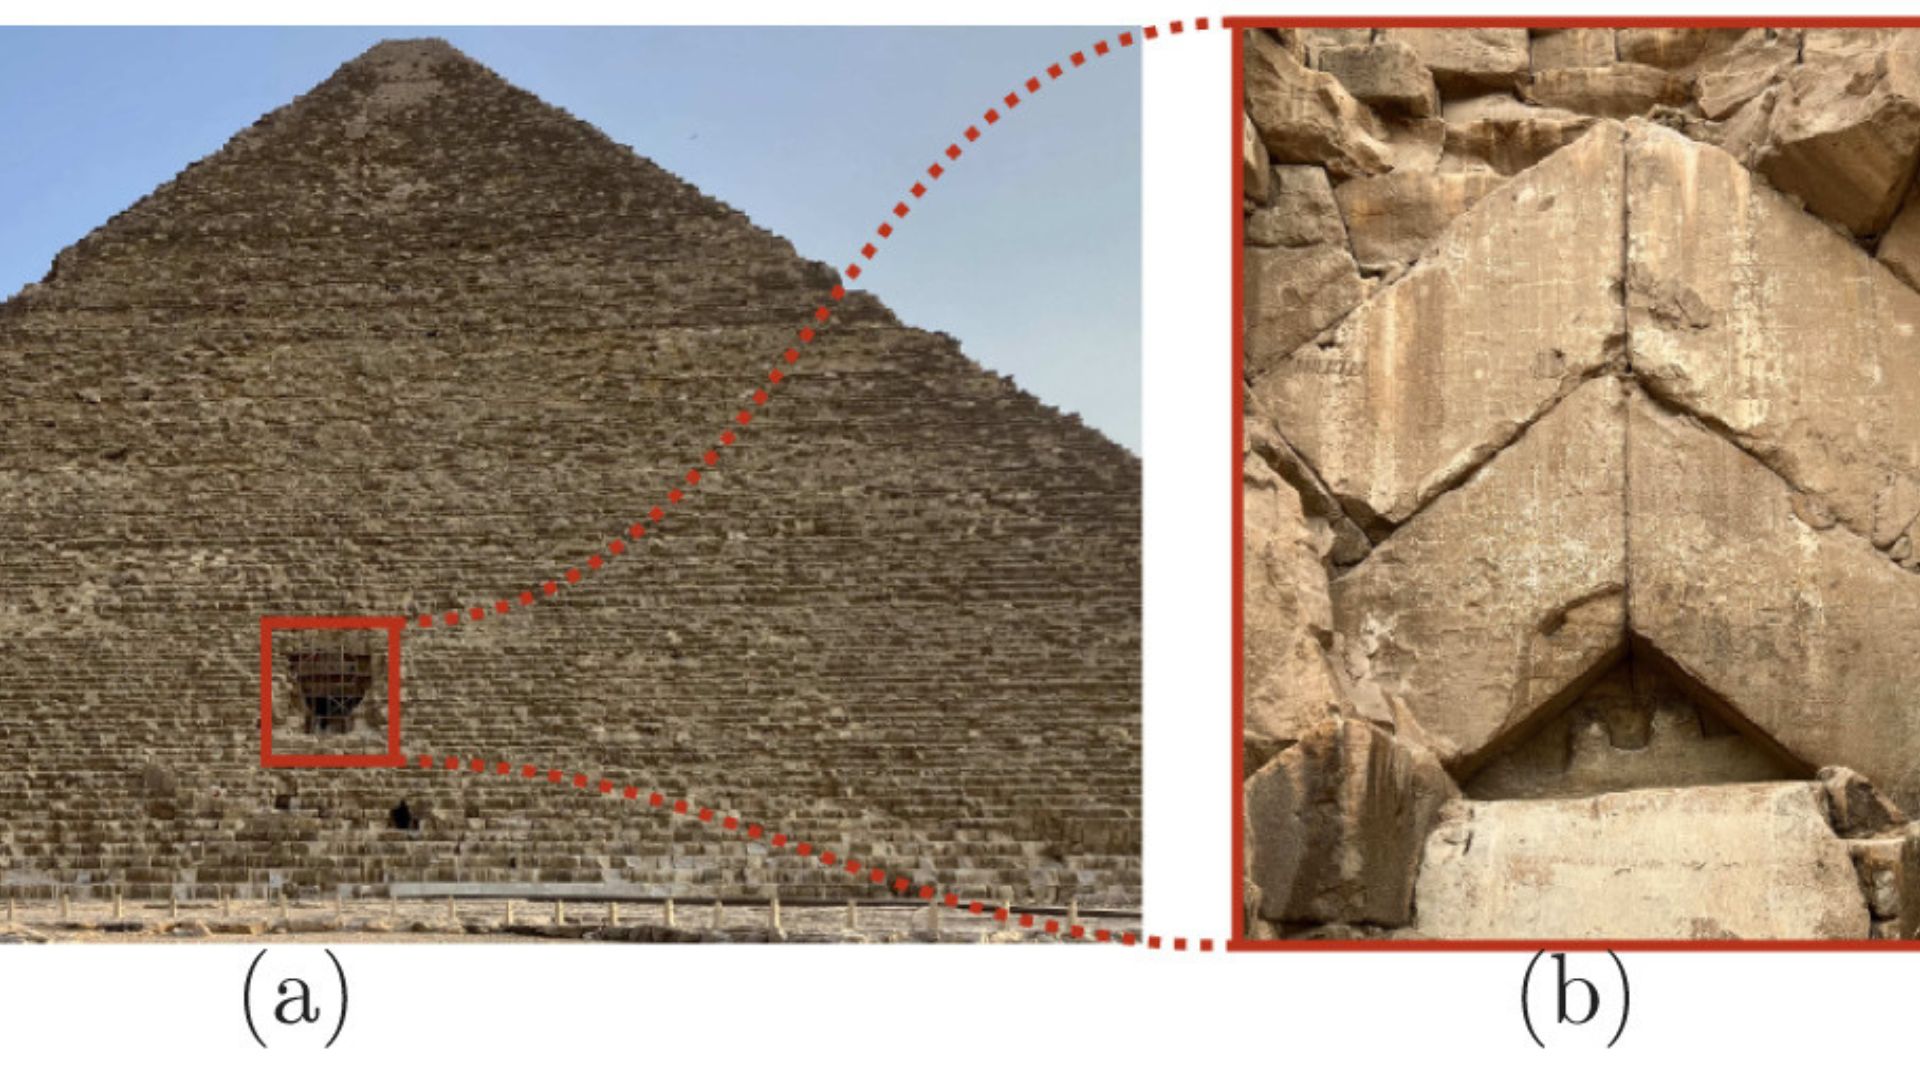 Les pyramides de Gizeh, face à l'éternité…